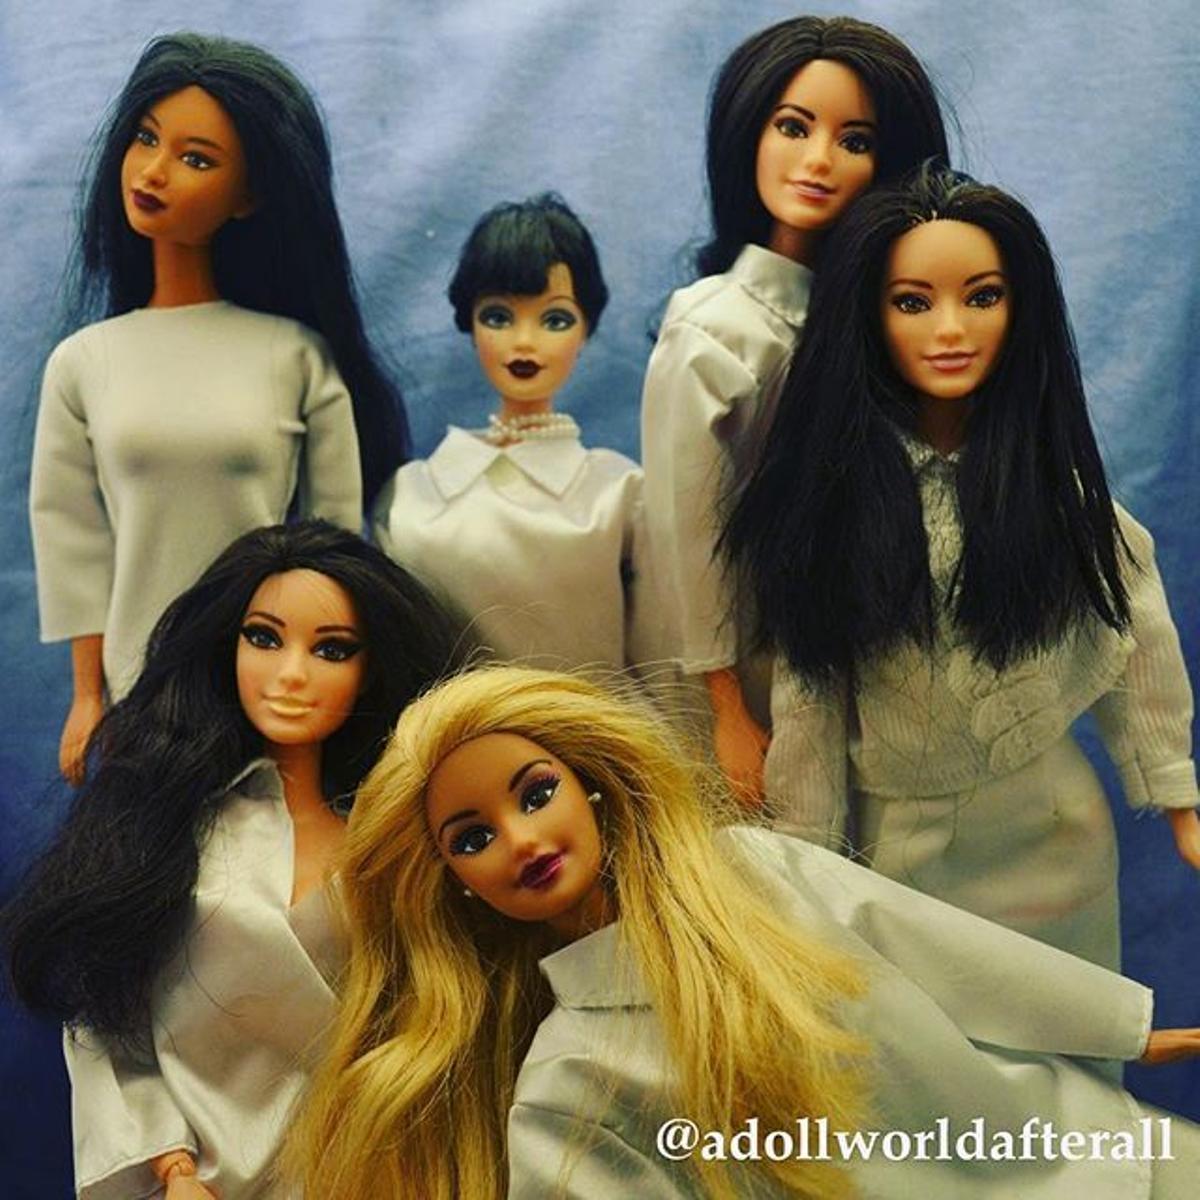 El clan Kardashian en el Instagram de @adollworldafterall